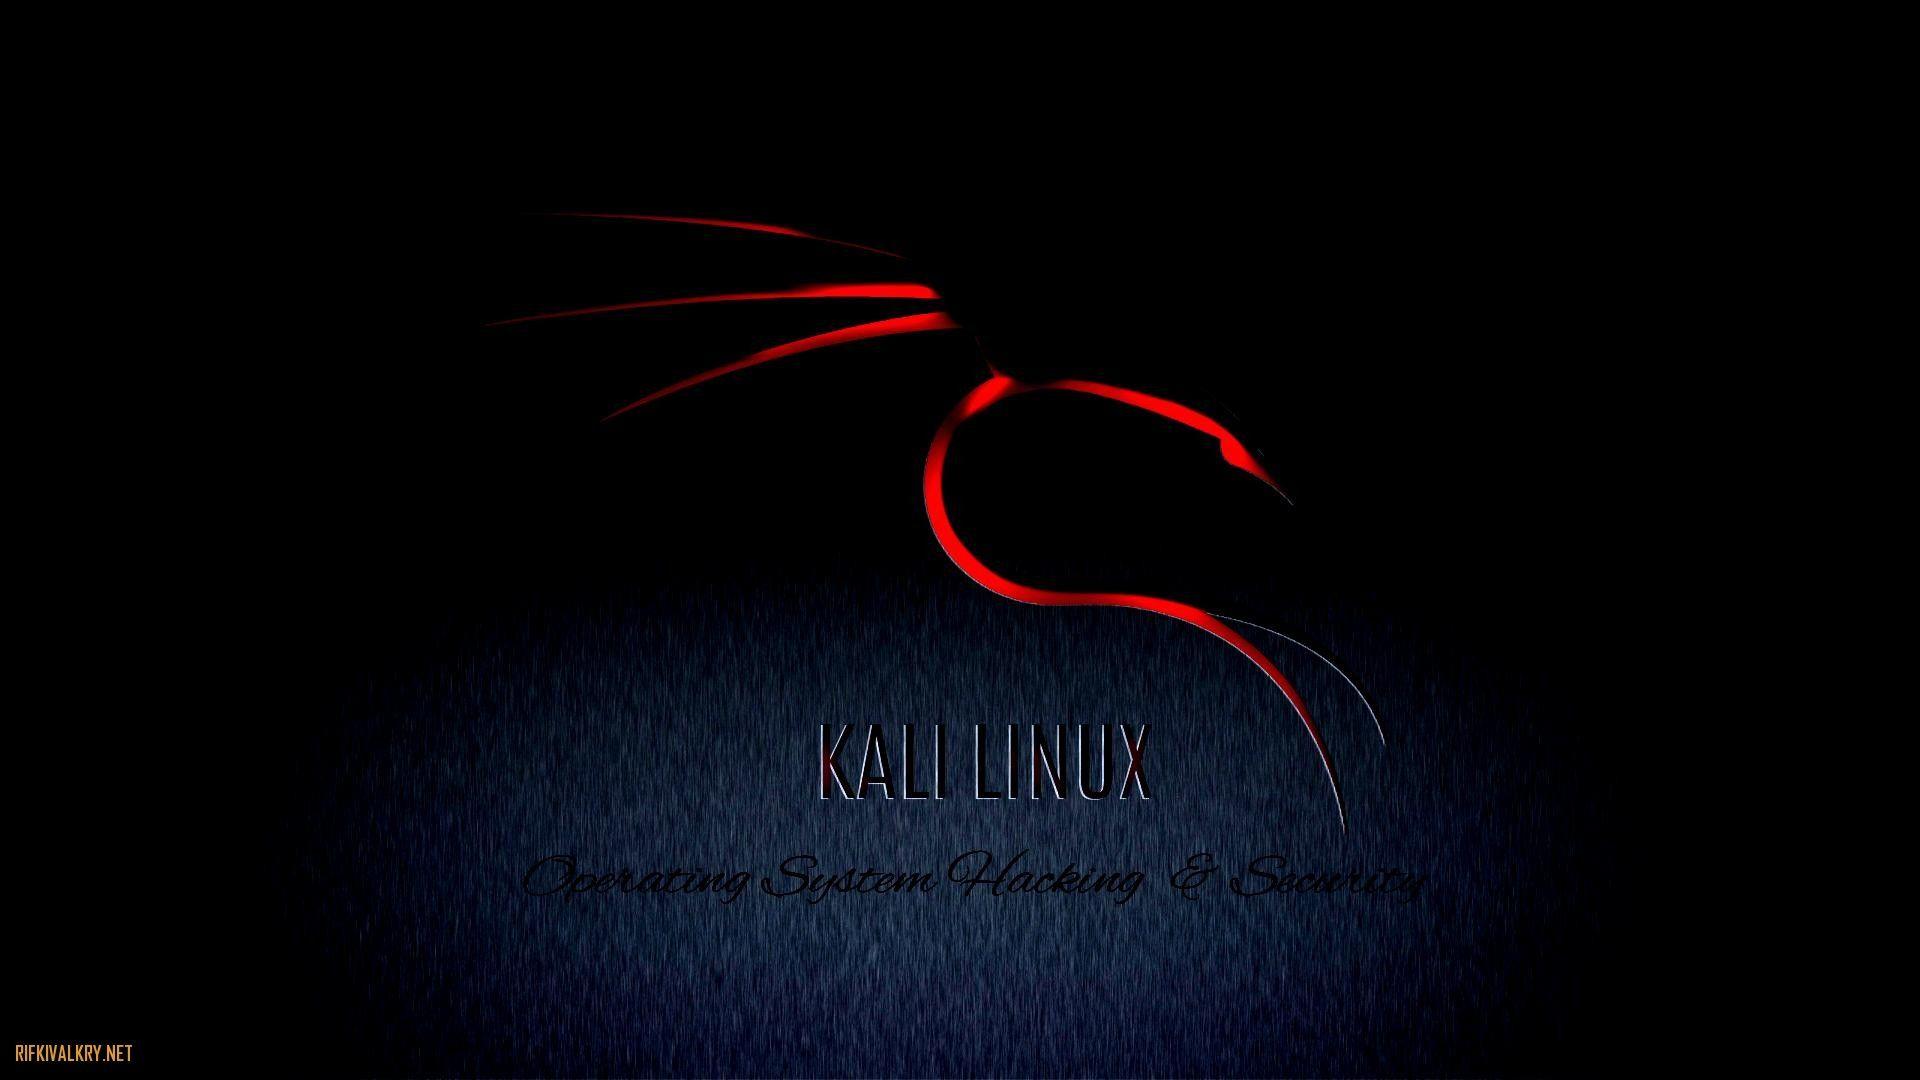 WallpaperDog đem đến cho bạn bộ sưu tập hình nền Kali Linux đa dạng và phong phú. Từ hình nền đơn giản tới nhiều biểu tượng đặc trưng của Kali Linux, bạn sẽ có nhiều sự lựa chọn để thể hiện sở thích công nghệ của mình.